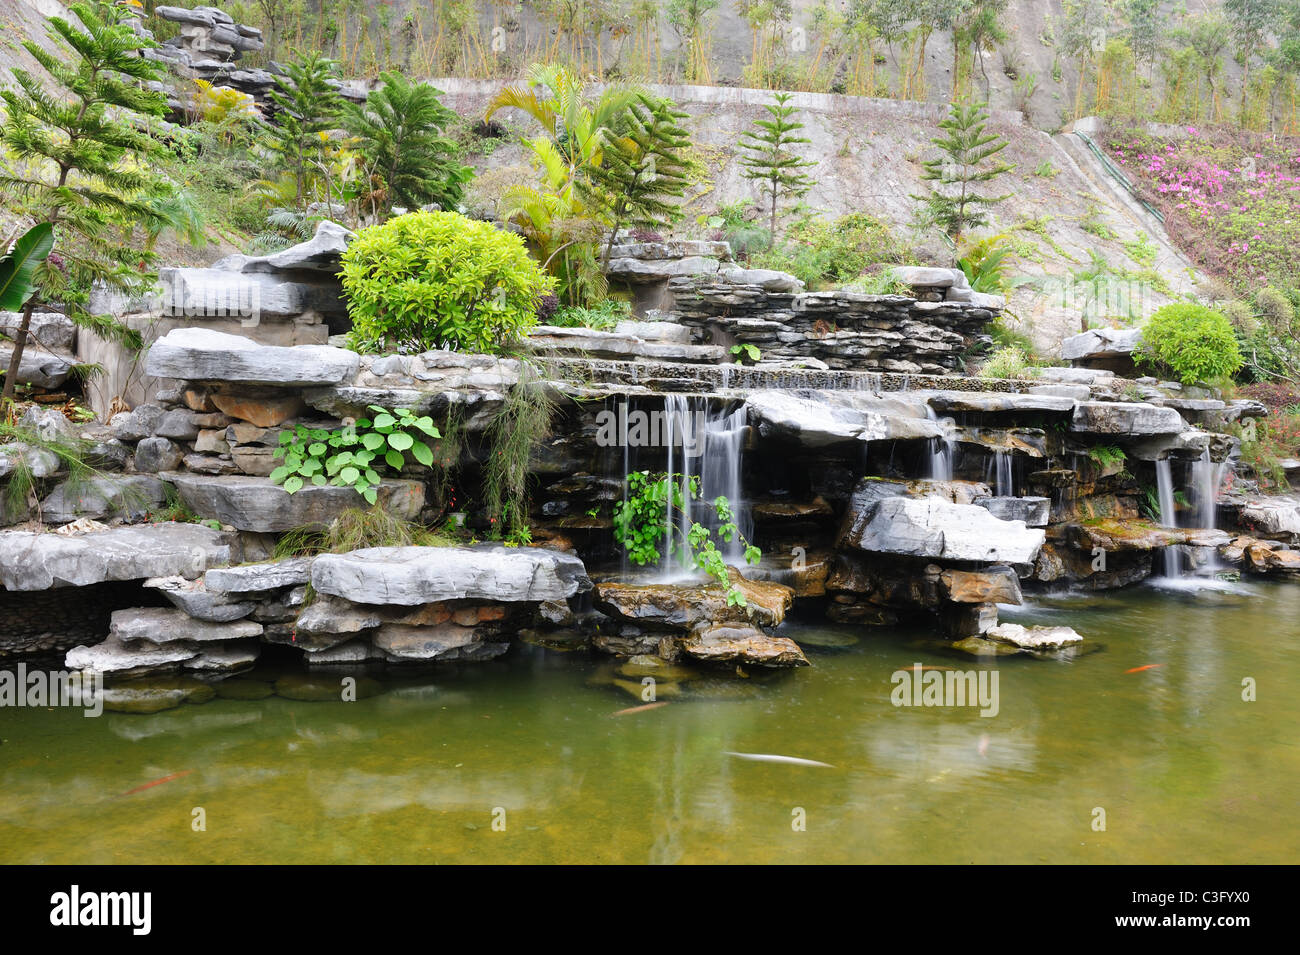 Jardin de rocaille chinois avec étang et cascade Banque D'Images